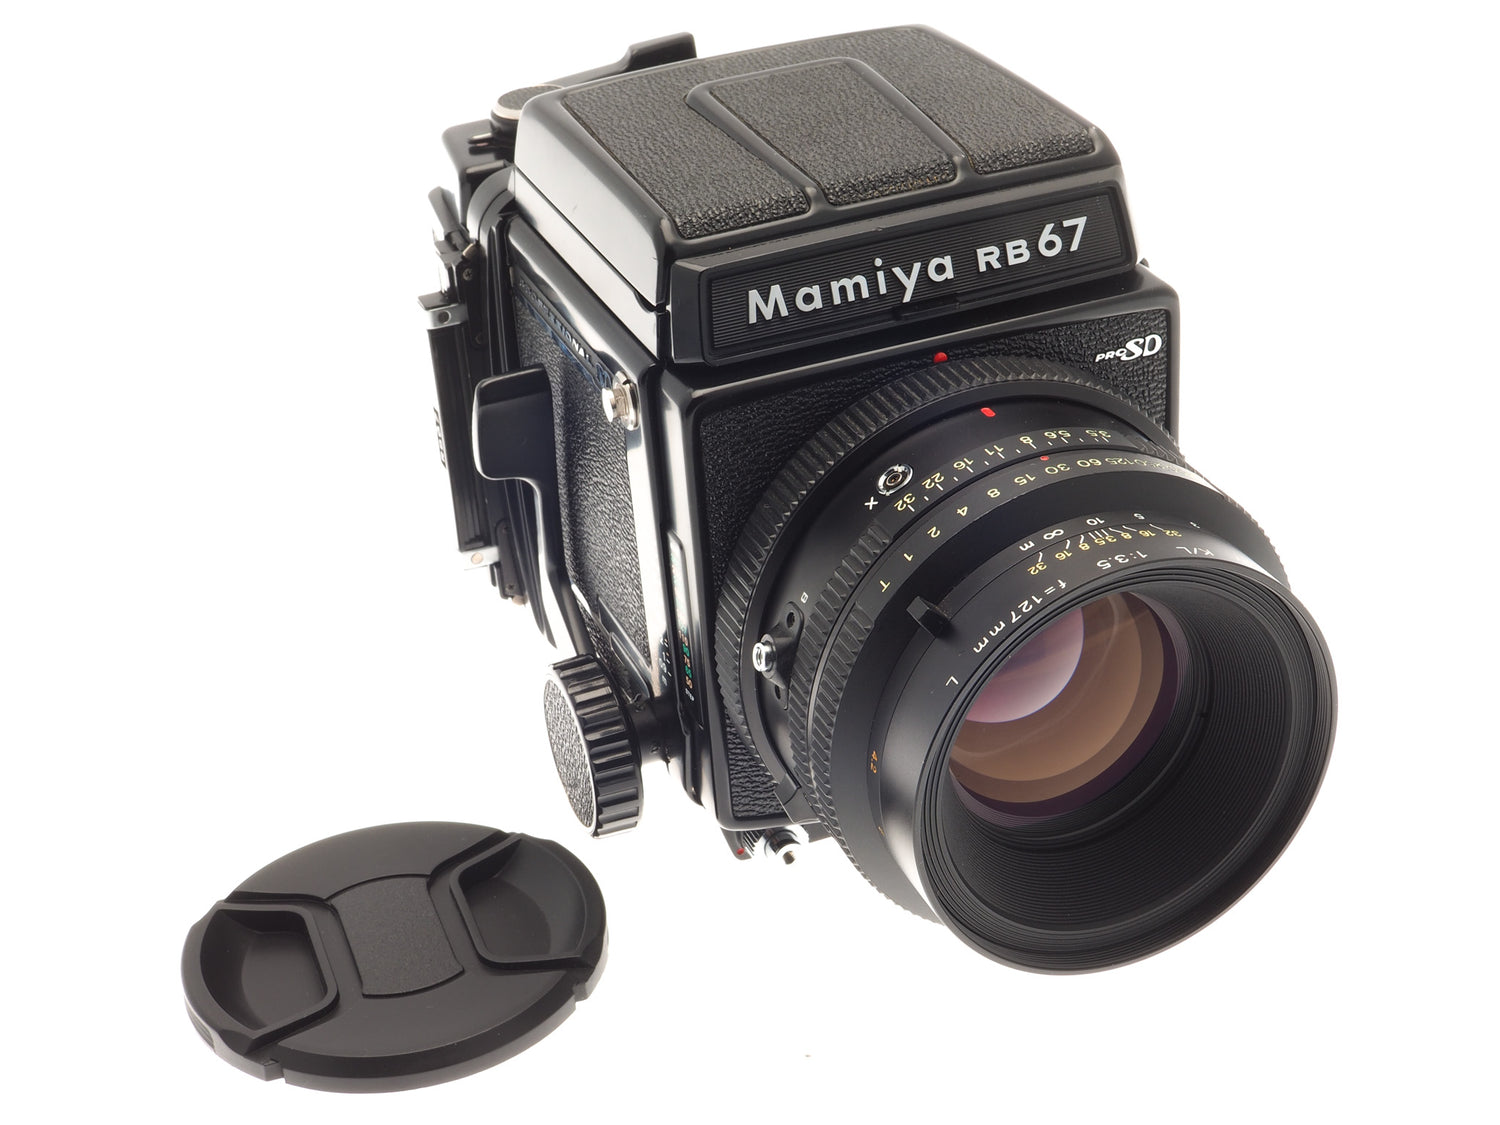 Mamiya RB67 Pro SD + 120 Pro-SD 6x7 Film Back + 127mm f3.5 L K/L + Wai